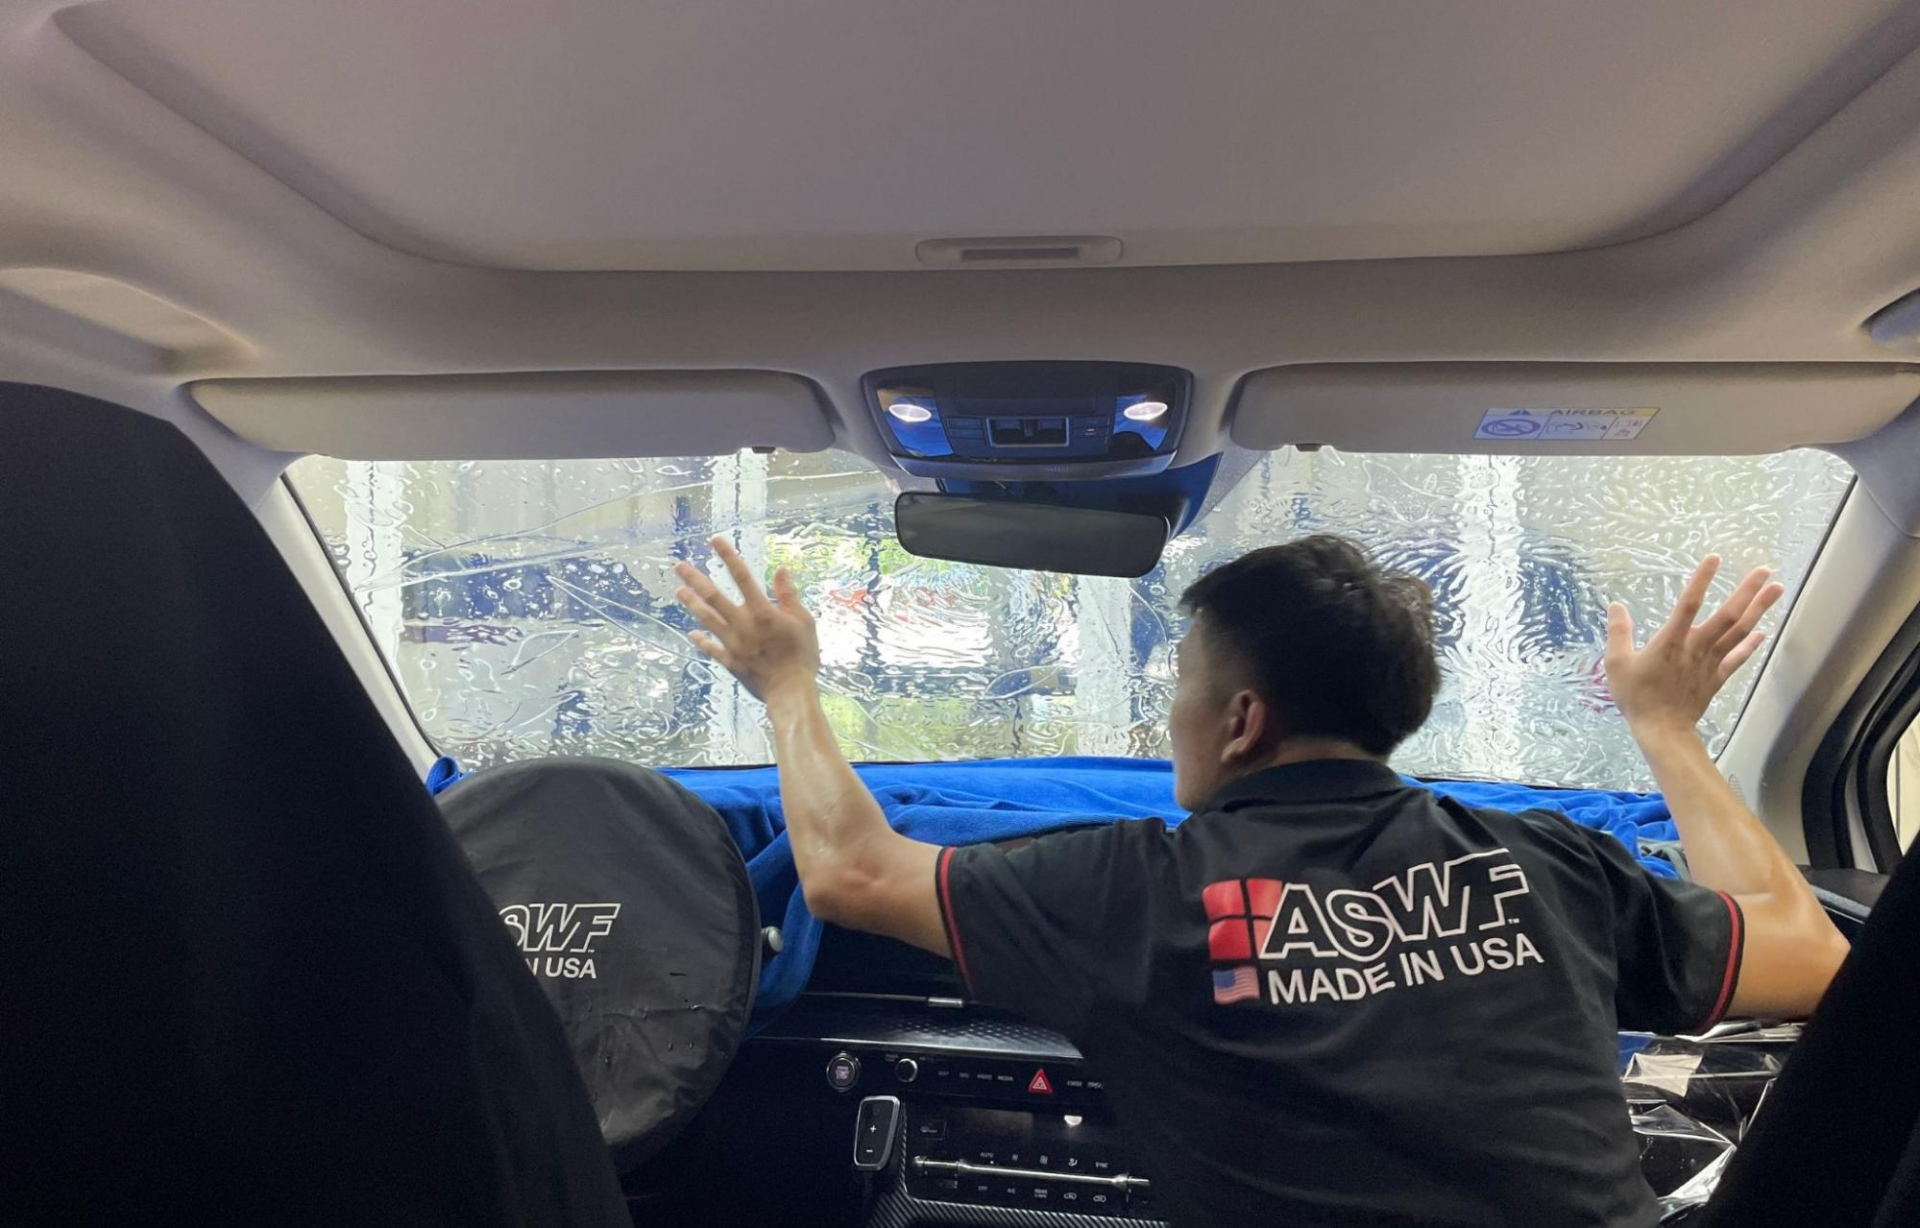 Thi công dán phim cách nhiệt ASWF xe hơi tại Hồ Chí Minh